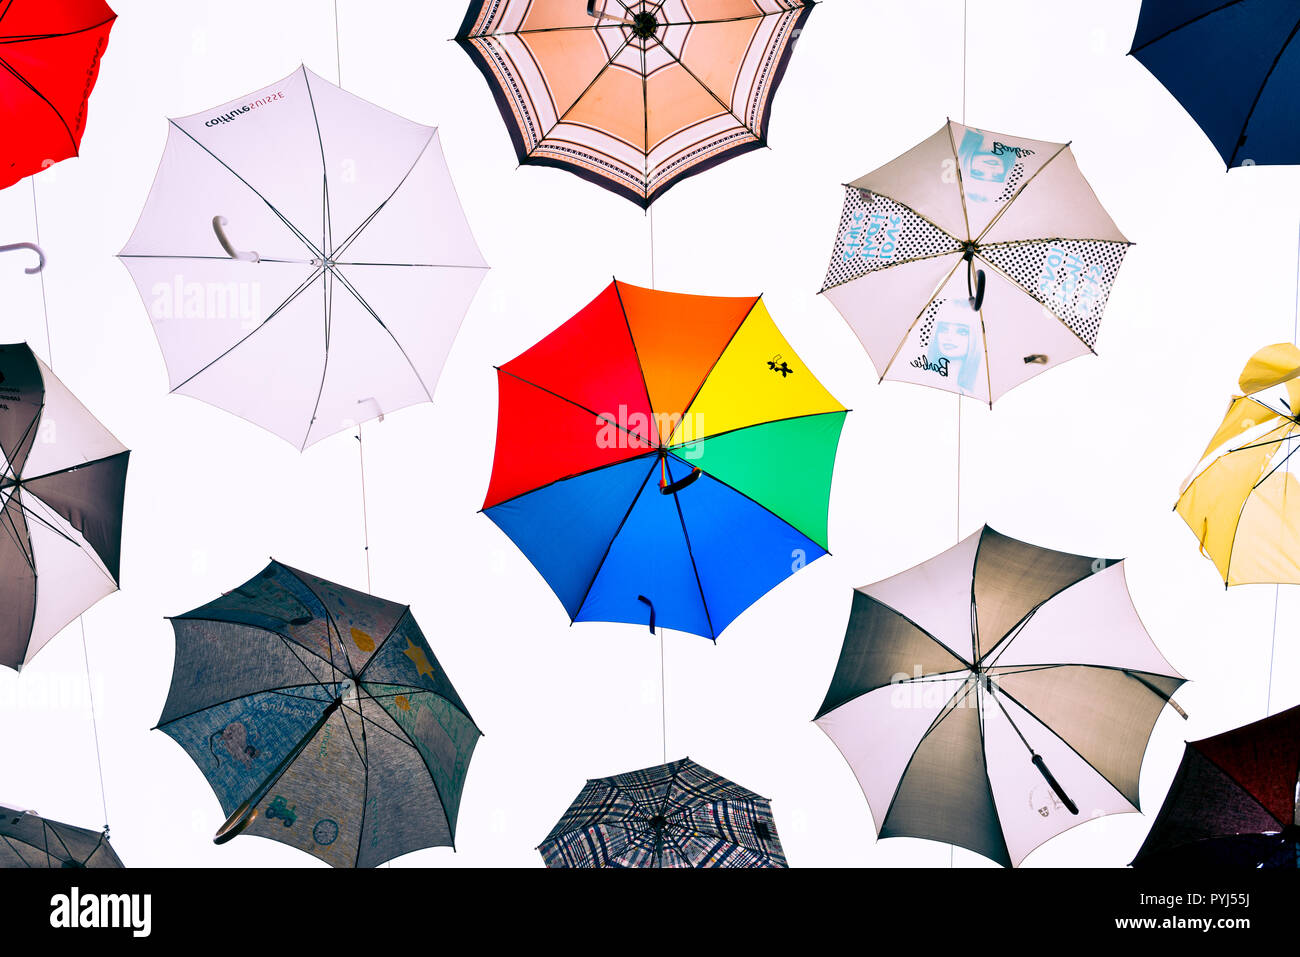 Zurich, Switzerland - March 2017: Art installation with suspended multiple colored umbrellas in Kreis 5 district of Zurich, Switzerland Stock Photo